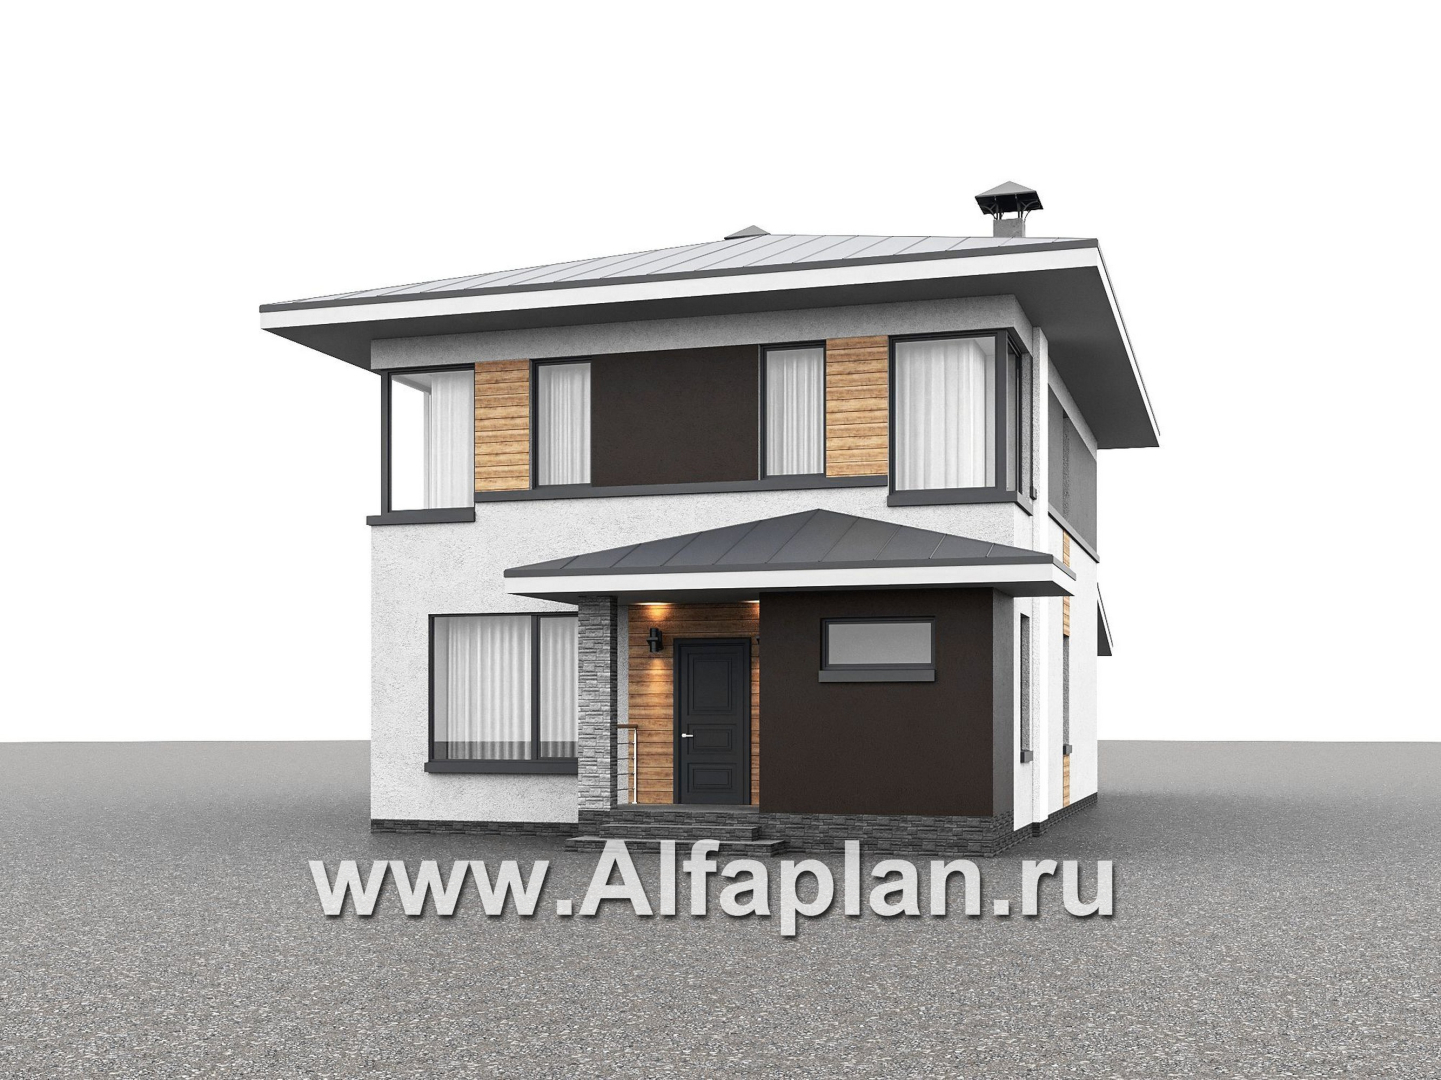 Проекты домов Альфаплан - "Генезис" - проект дома, 2 этажа, с остекленной террасой в стиле Райта - дополнительное изображение №1